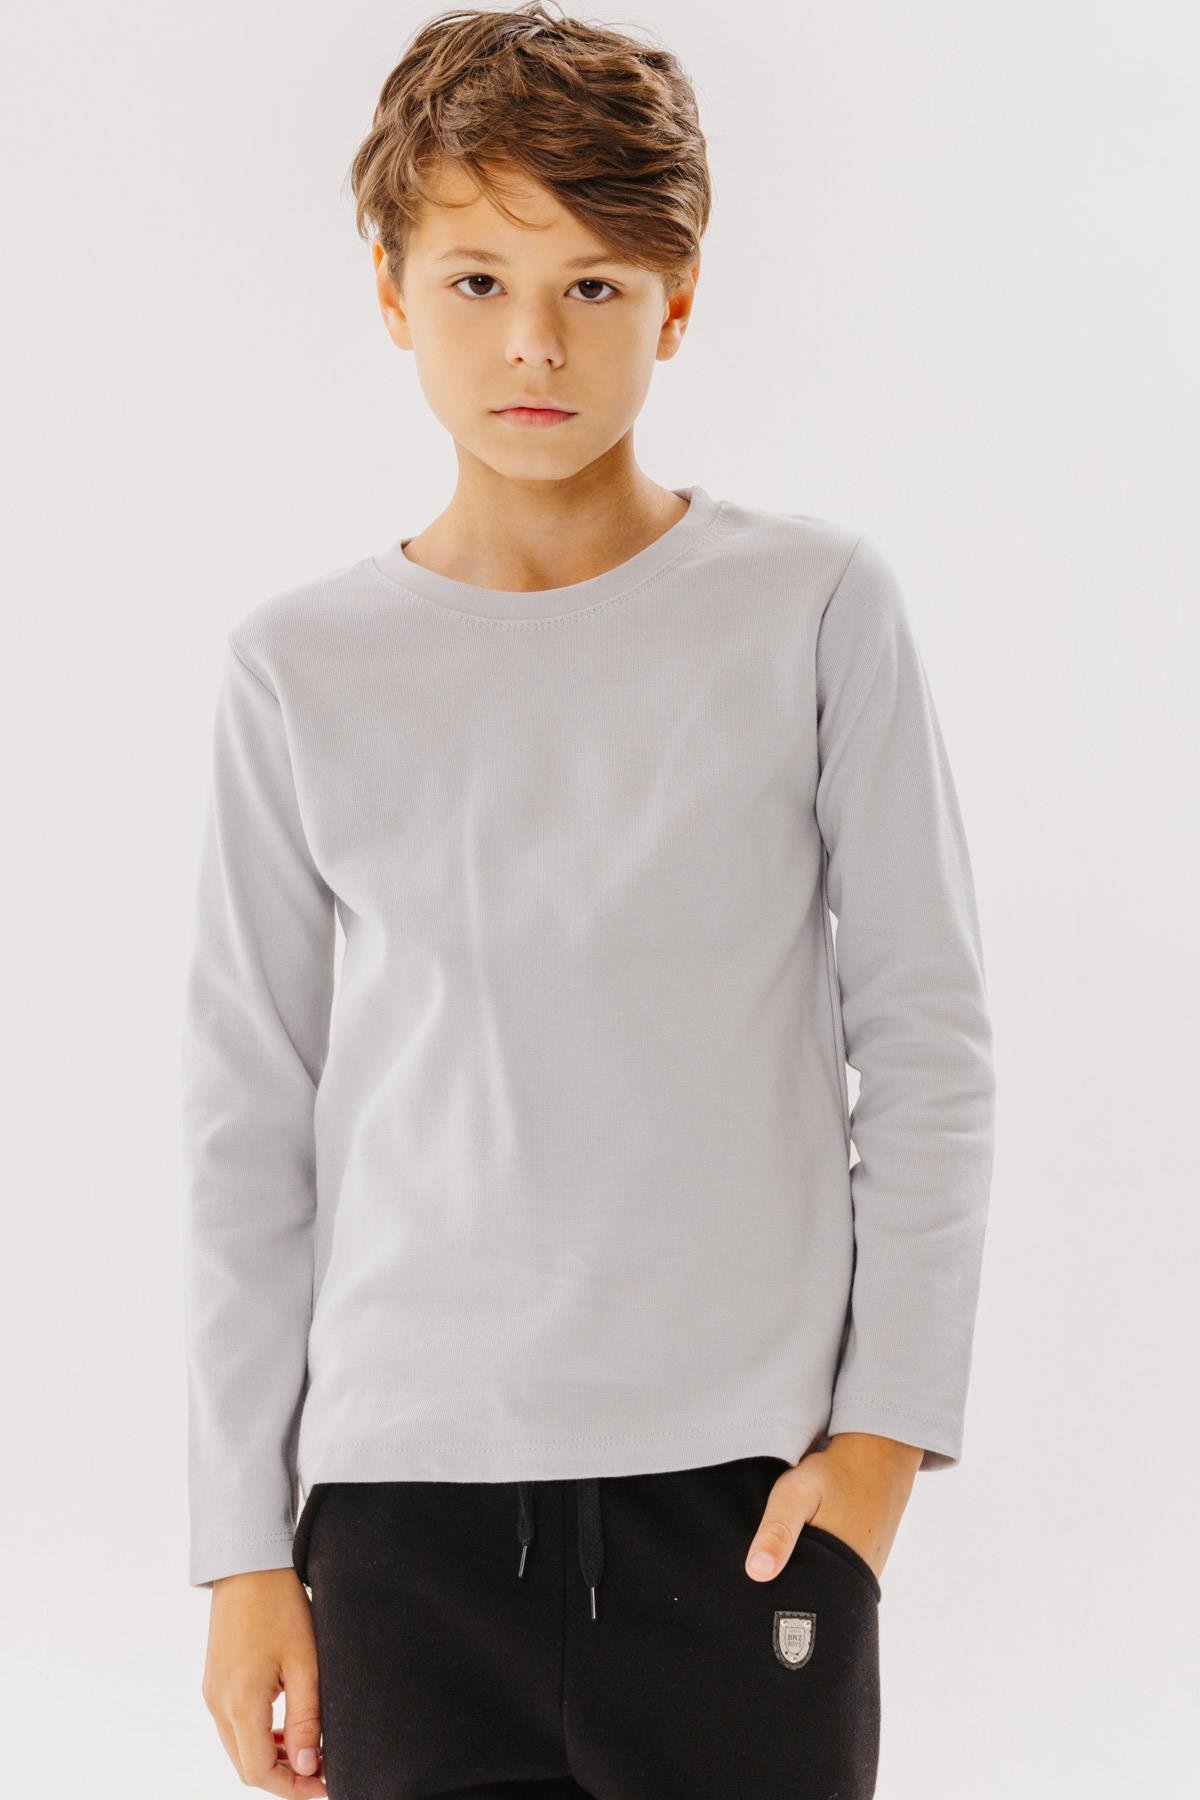 Erkek Çocuk Uzun Kollu Tişört Basic Gri 9-14 Yaş - Penye Kumaş | Breeze